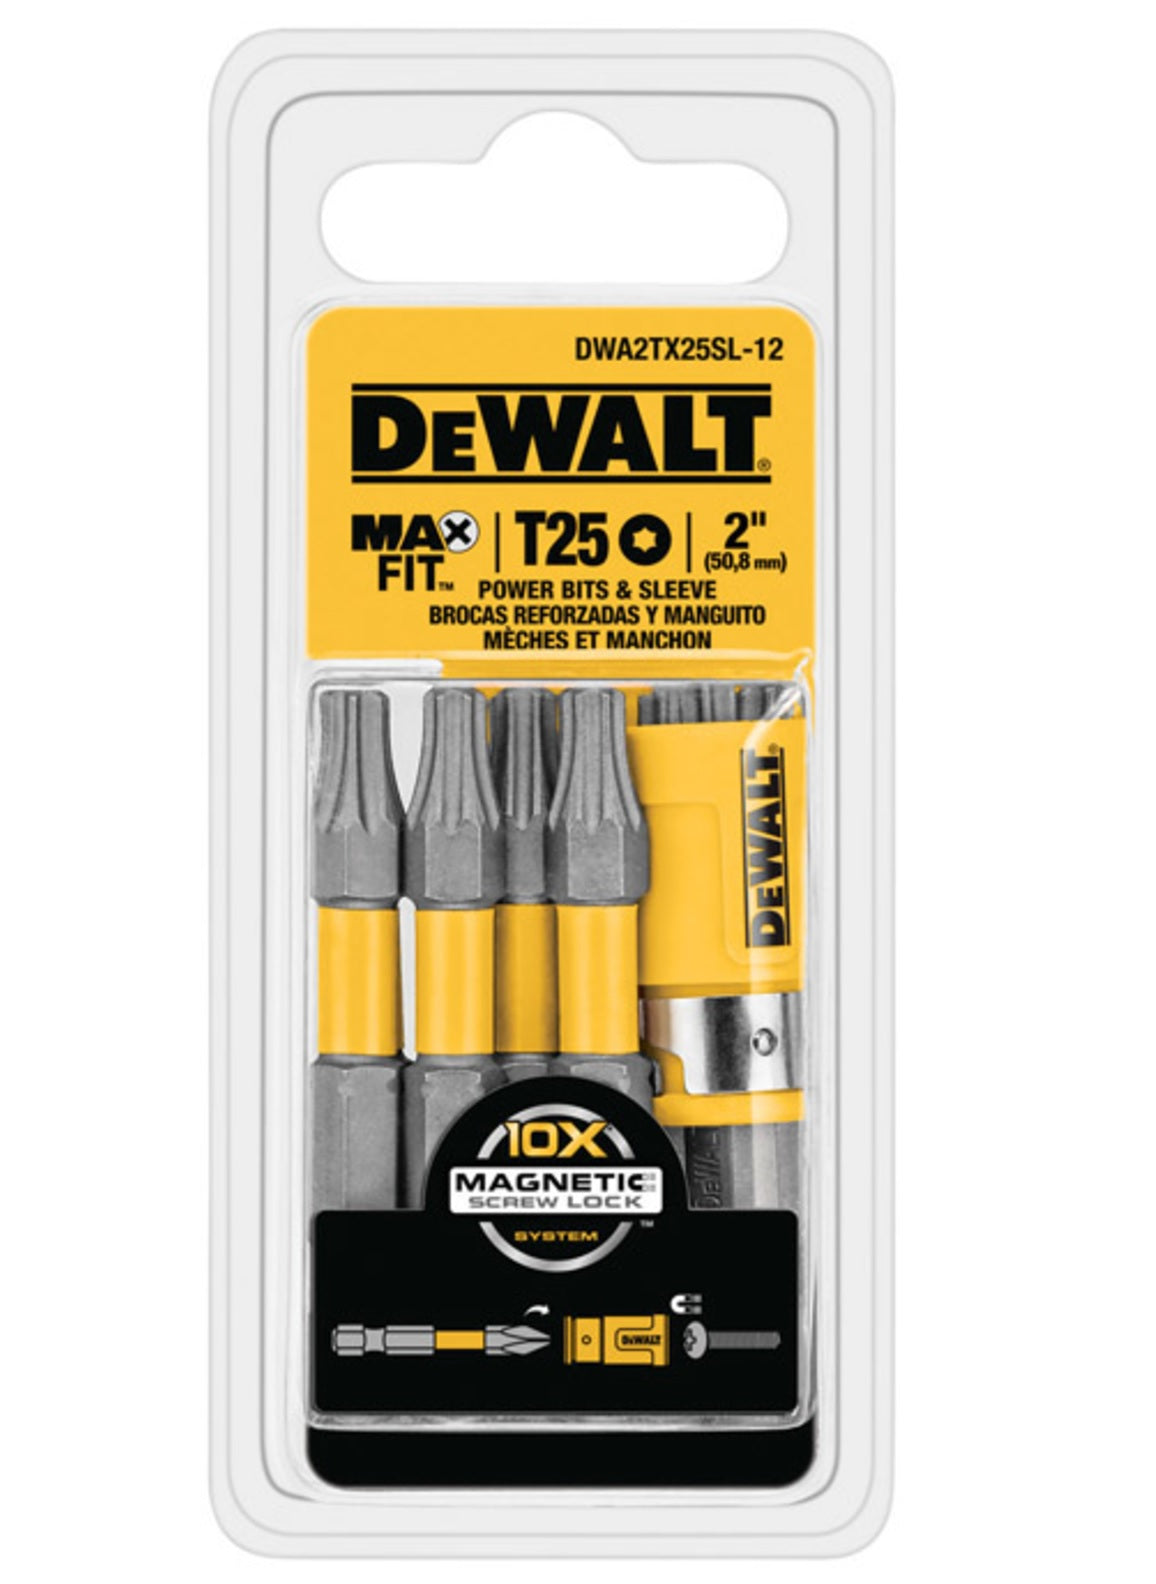 DeWalt DWA2TX25SL-12 MAXFIT Torx Power Bit & Sleeve Set, T25 x 2"